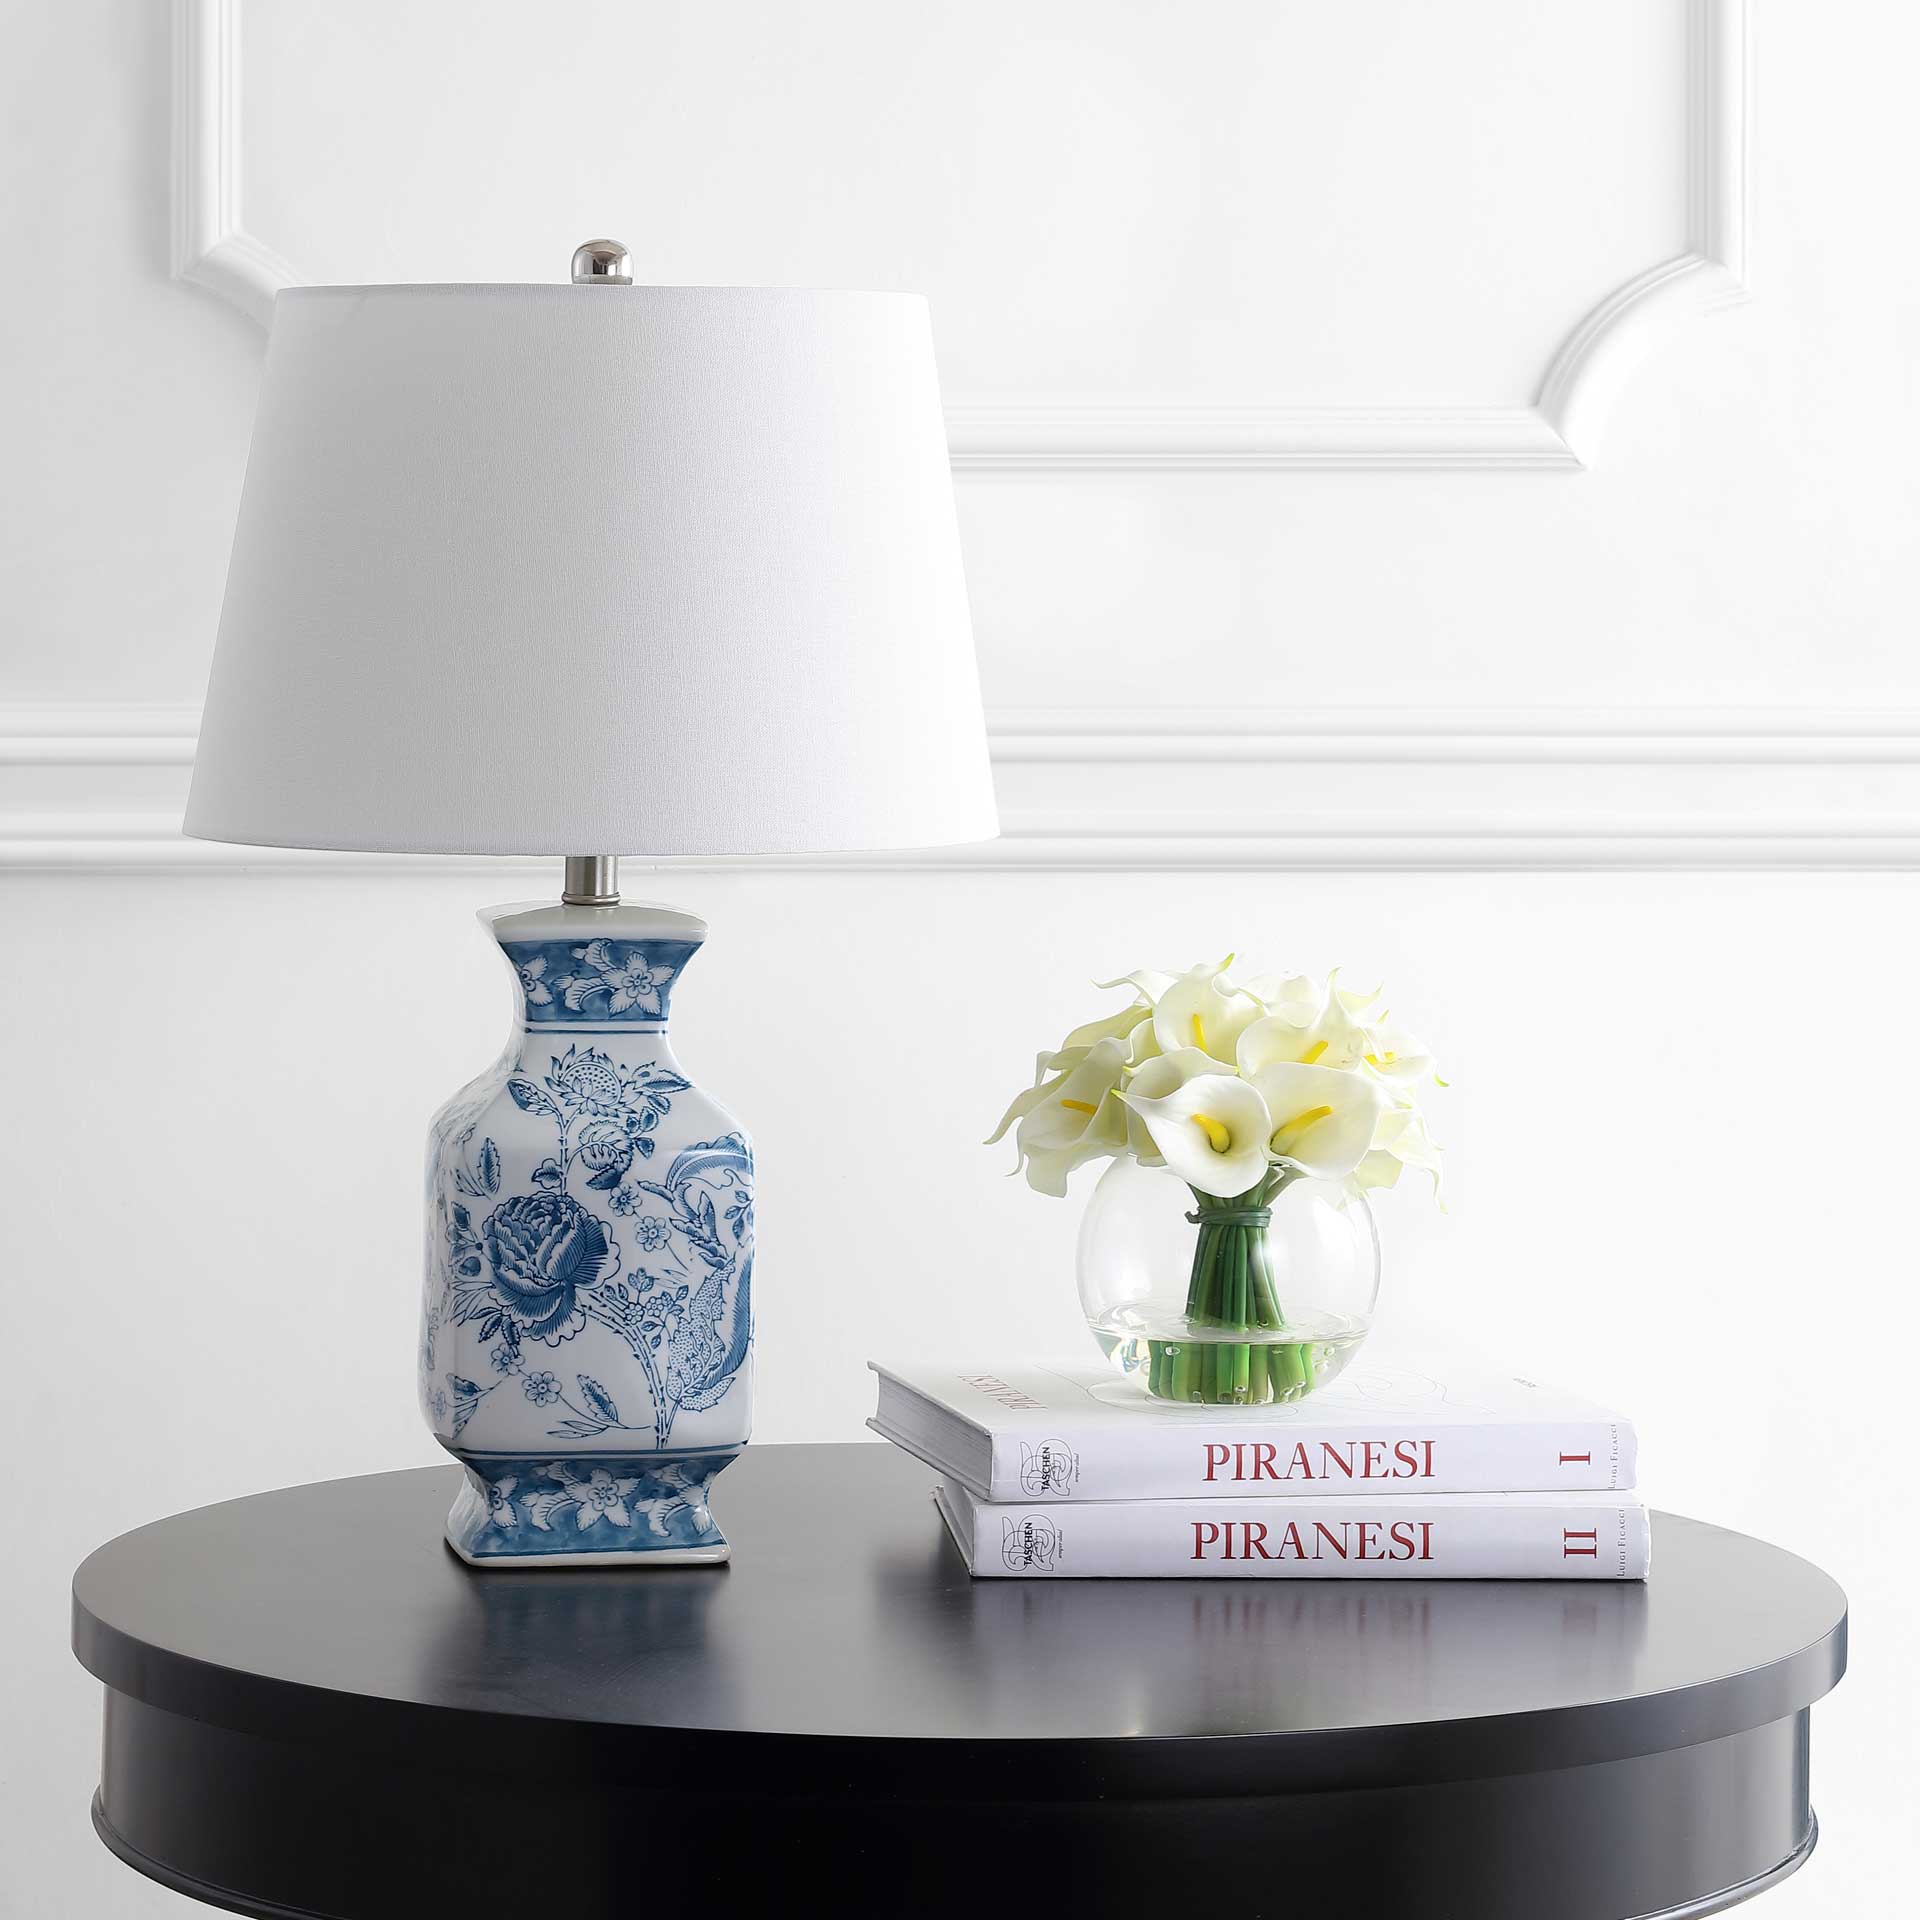 Maren Table Lamp Blue/White